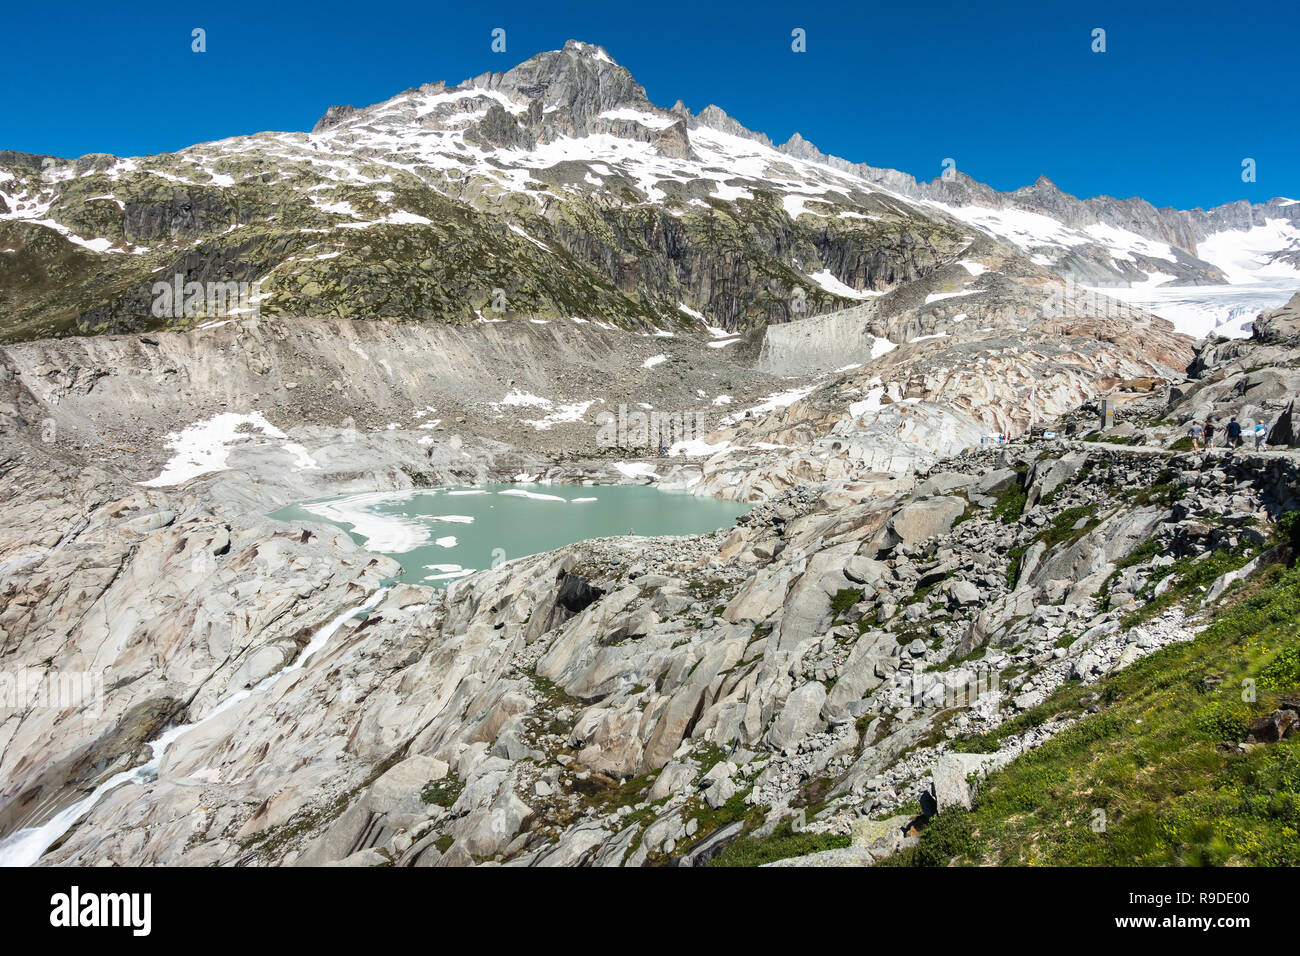 Paesaggio del ghiacciaio del Rodano, che è significativamente si ritirarono negli ultimi due secoli a causa di cambiamenti climatici, Vallese, Svizzera Foto Stock